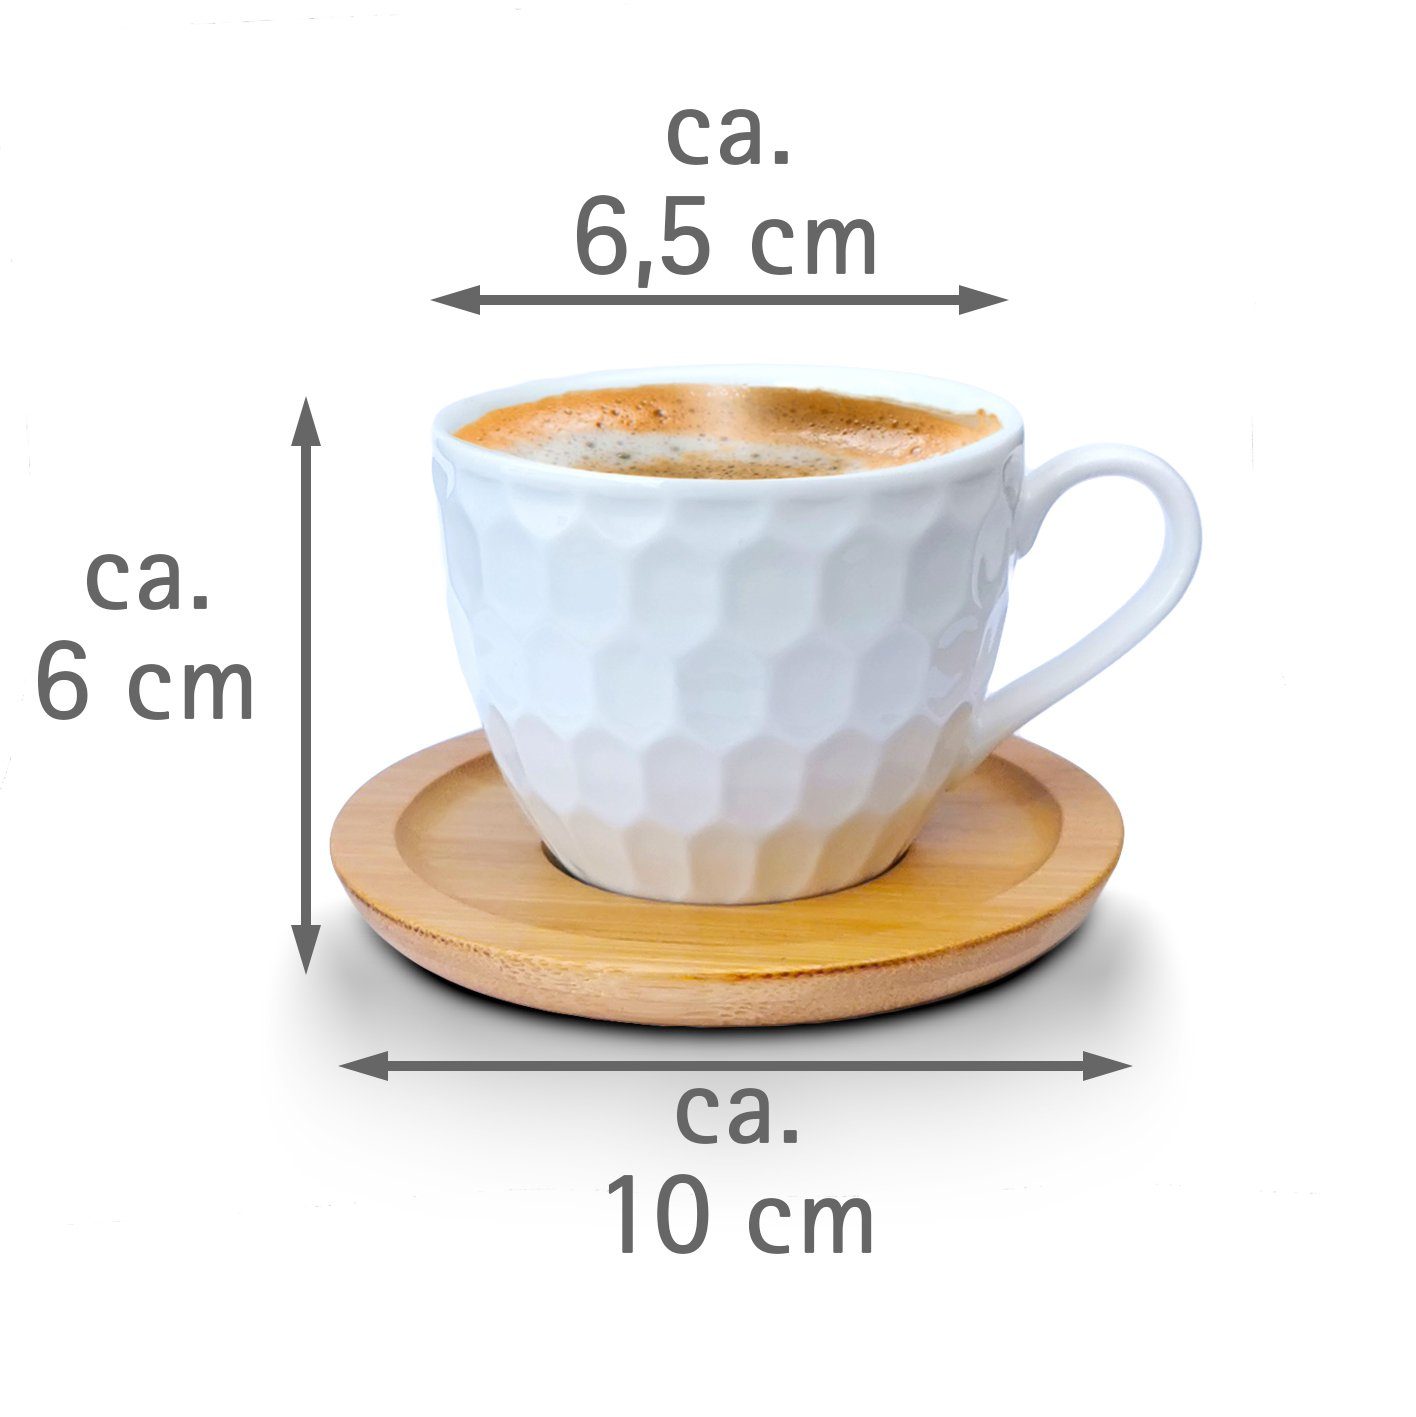 Espressotassen, mit 6er-Set, Untertassen mit Porzellan Untertassen Kaffeeservice Mod2 Set Melody Tasse Porzellan, Teeservice Tassen 12-Teilig,